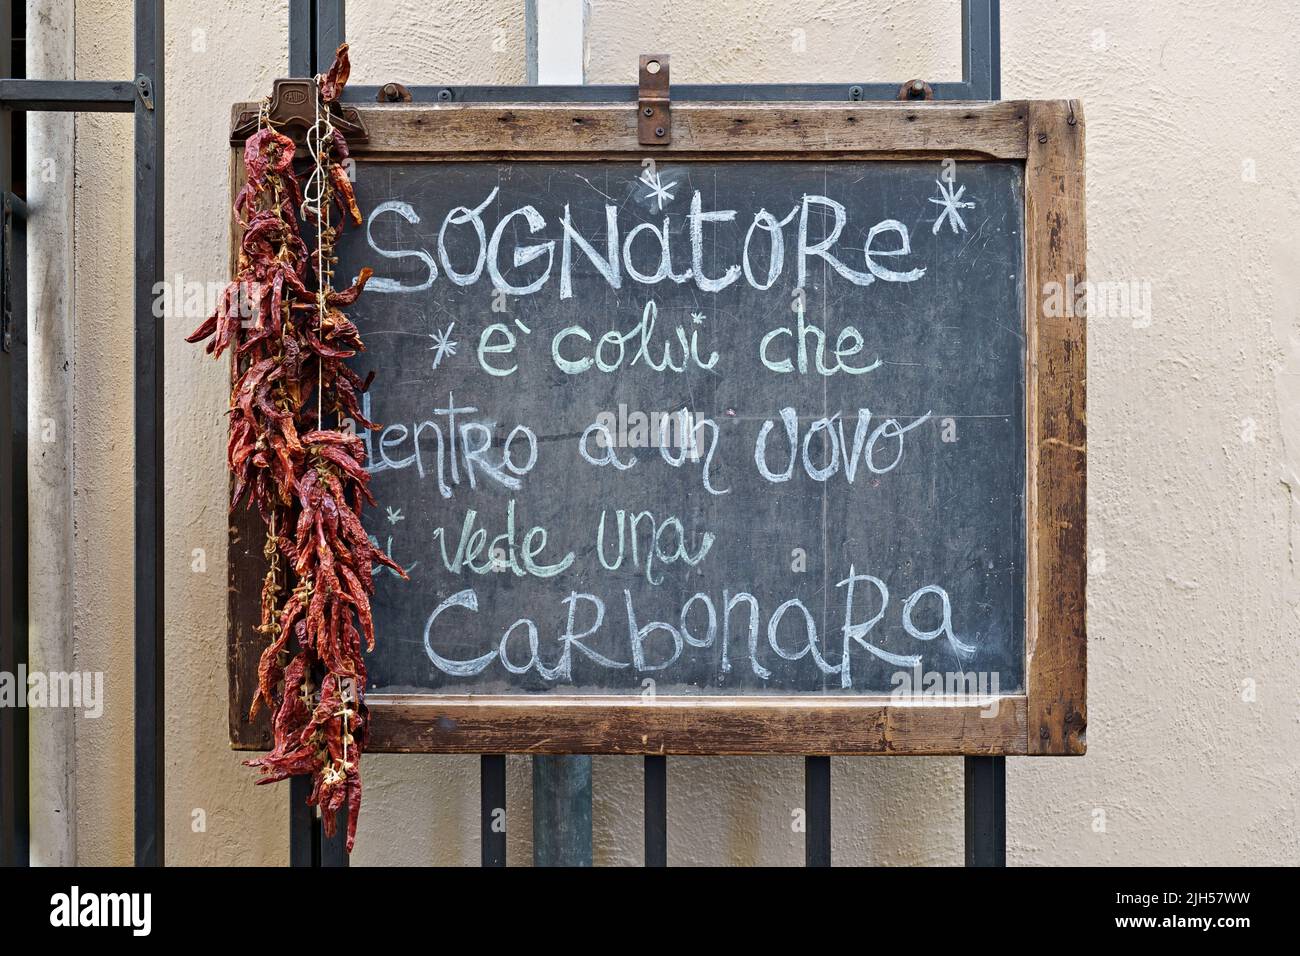 Un sognatore è quello che vede una carbonara all'interno di un uovo, scritto su un cartello nero da lavagna all'esterno di un ristorante. Roma, Italia, Europa, Unione europea Foto Stock